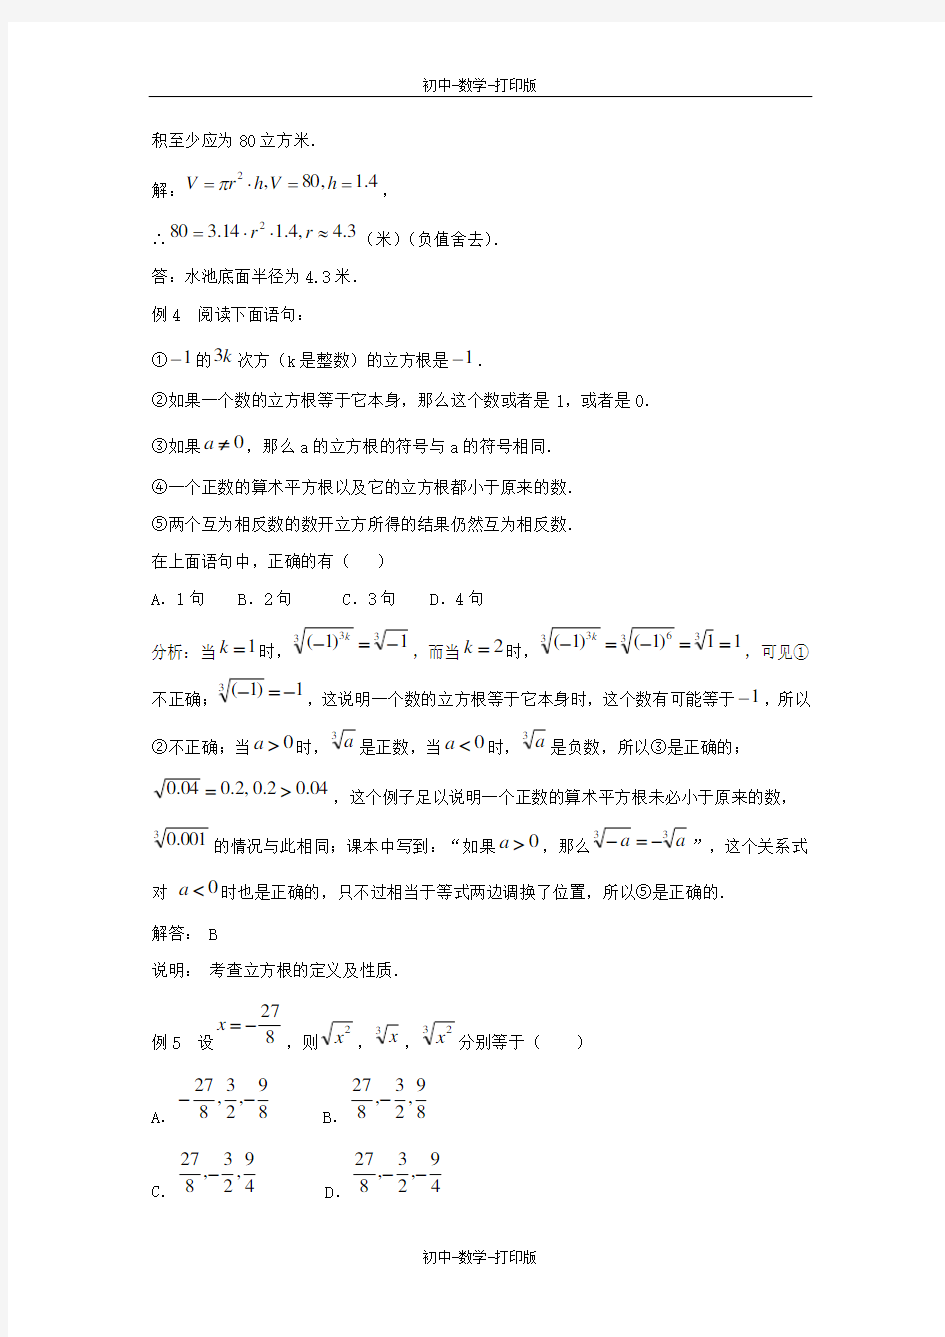 苏科版-数学-八年级上册-《立方根》典型例题 (2)